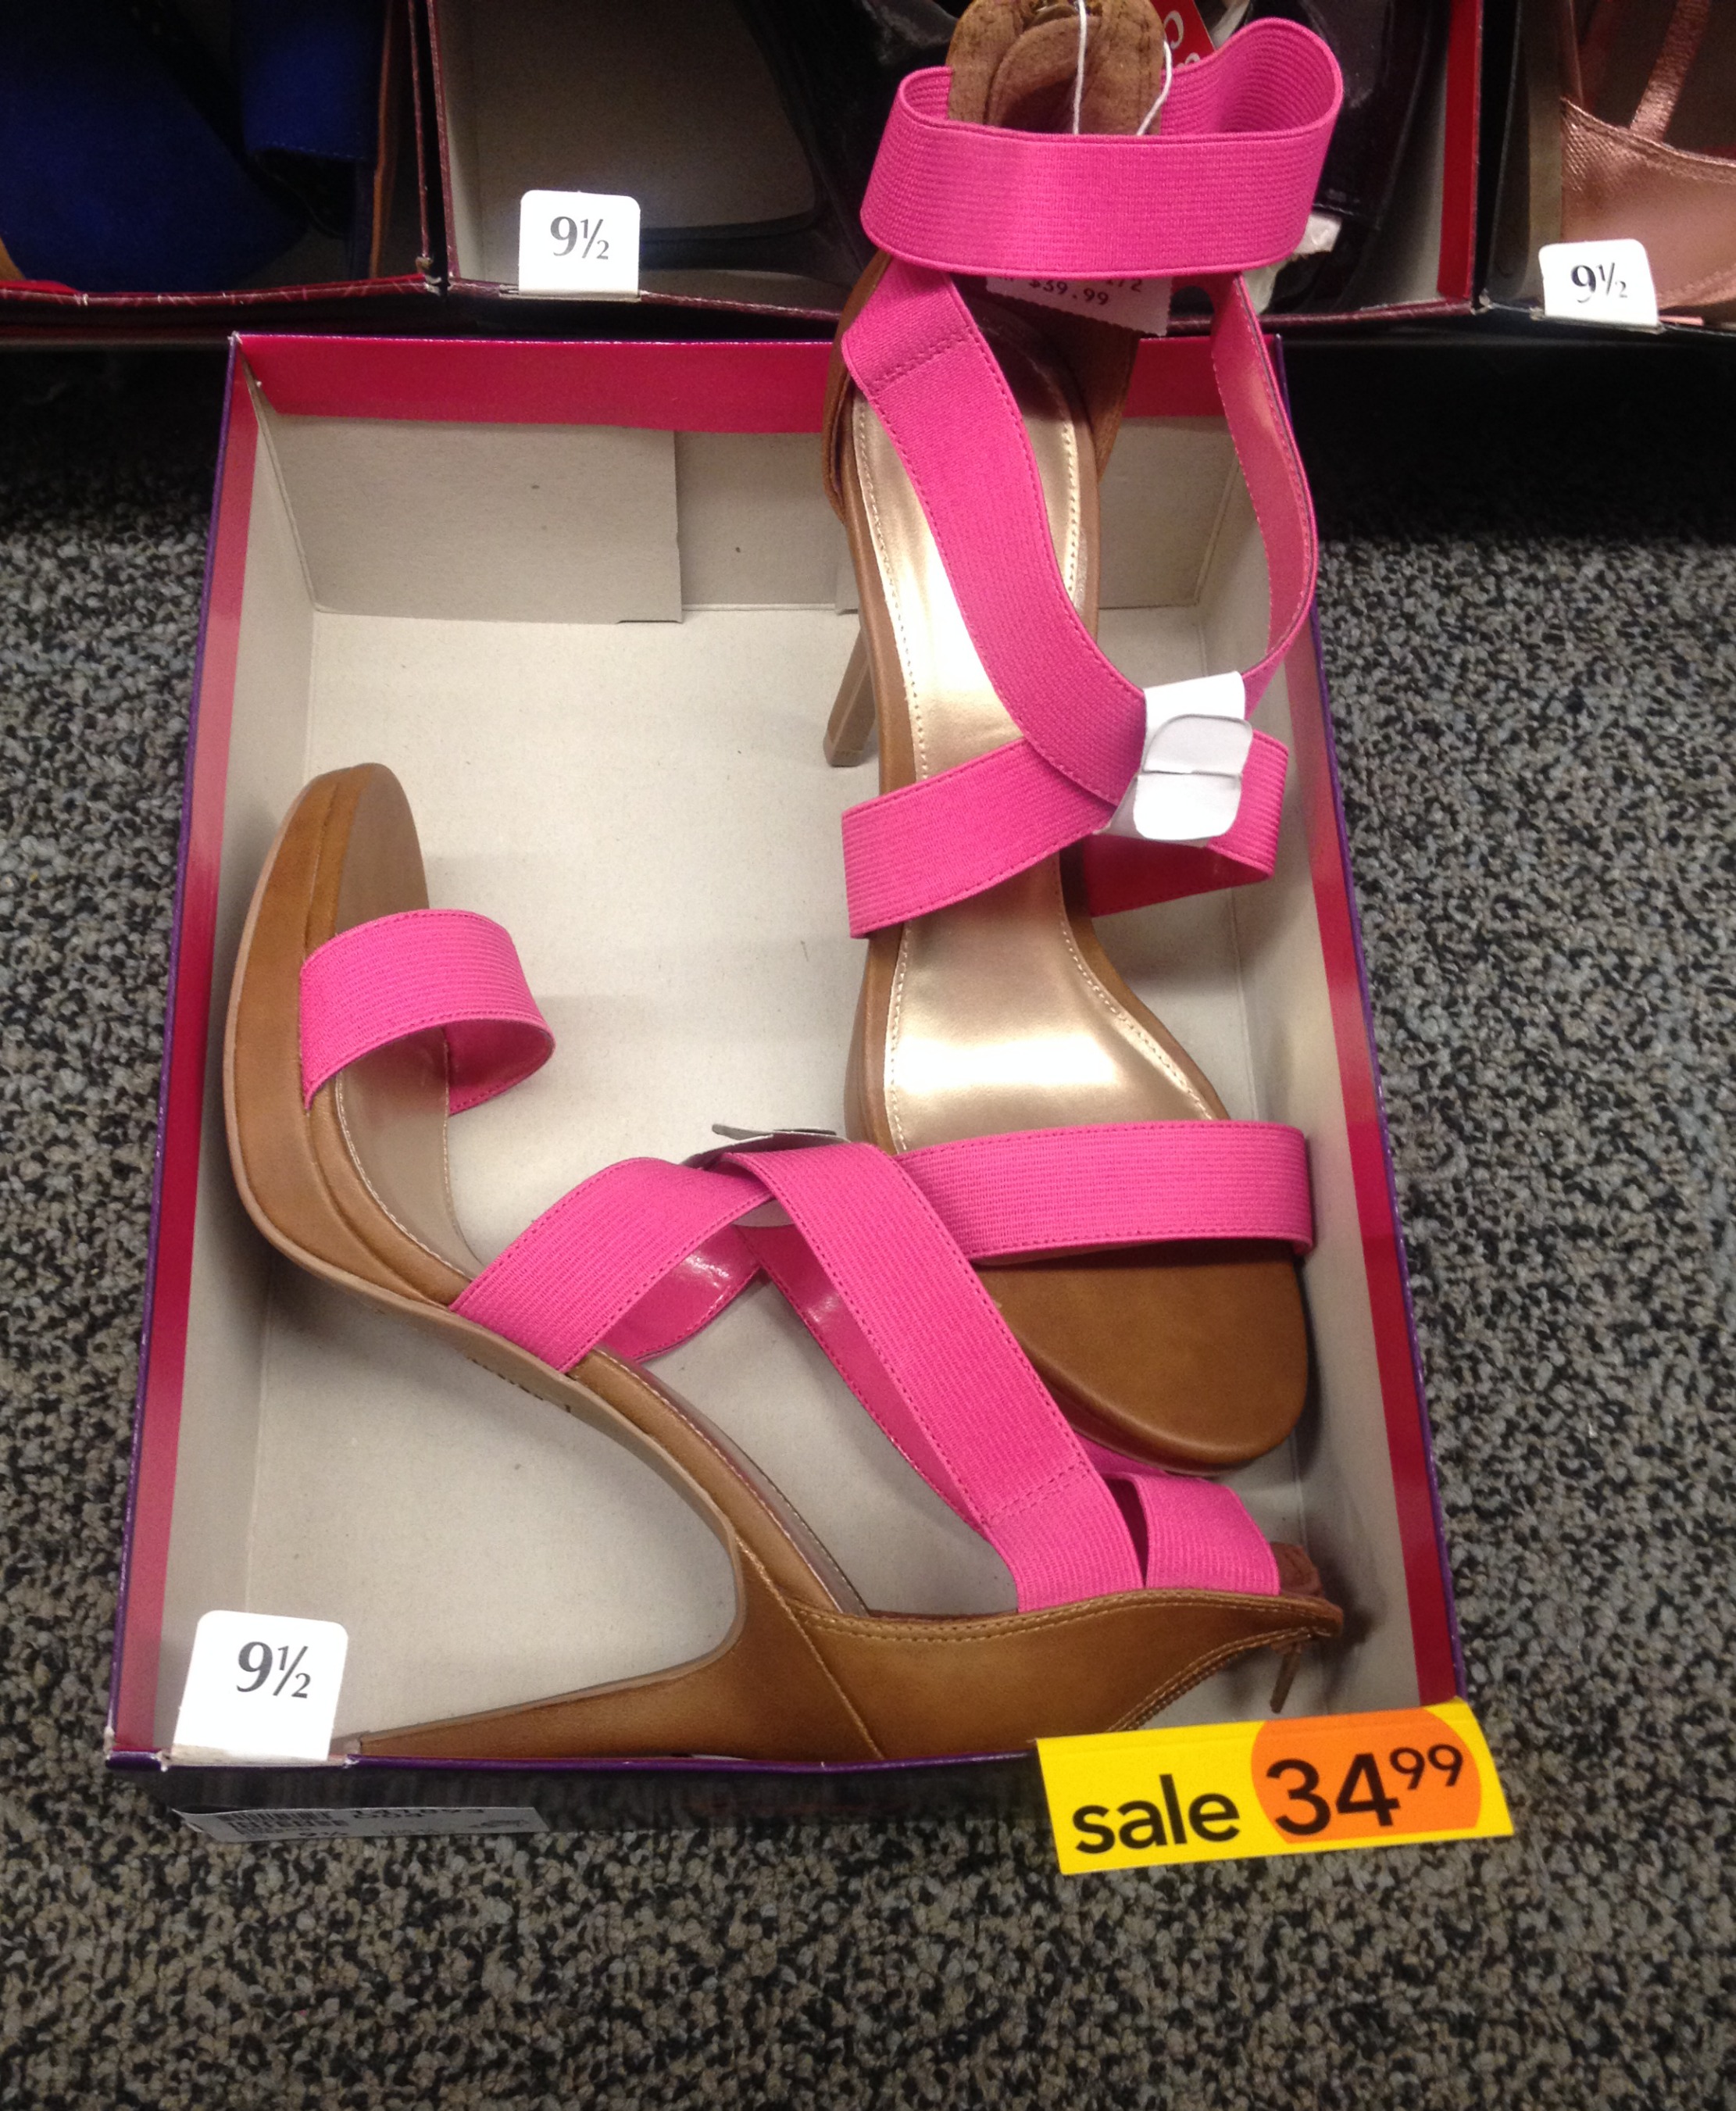 payless pink heels